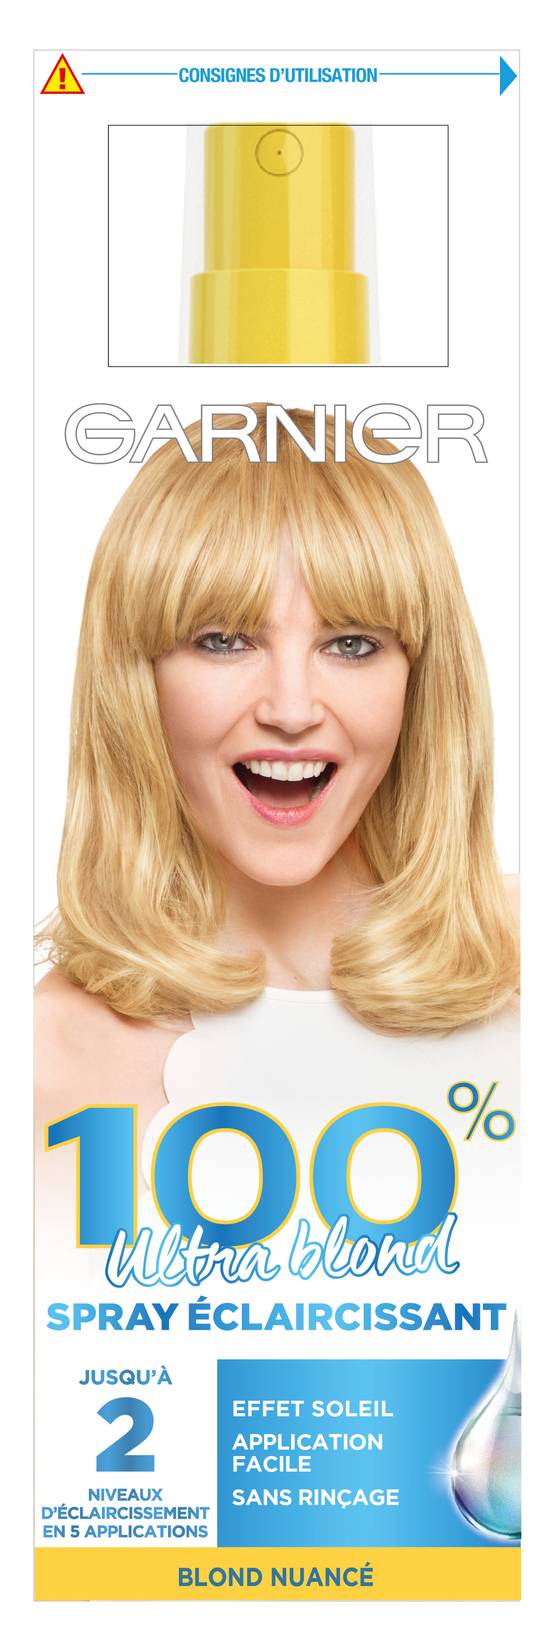 Garnier - 100% Ultra blond coloration cheveux permanente spray éclaircissant (125 ml)